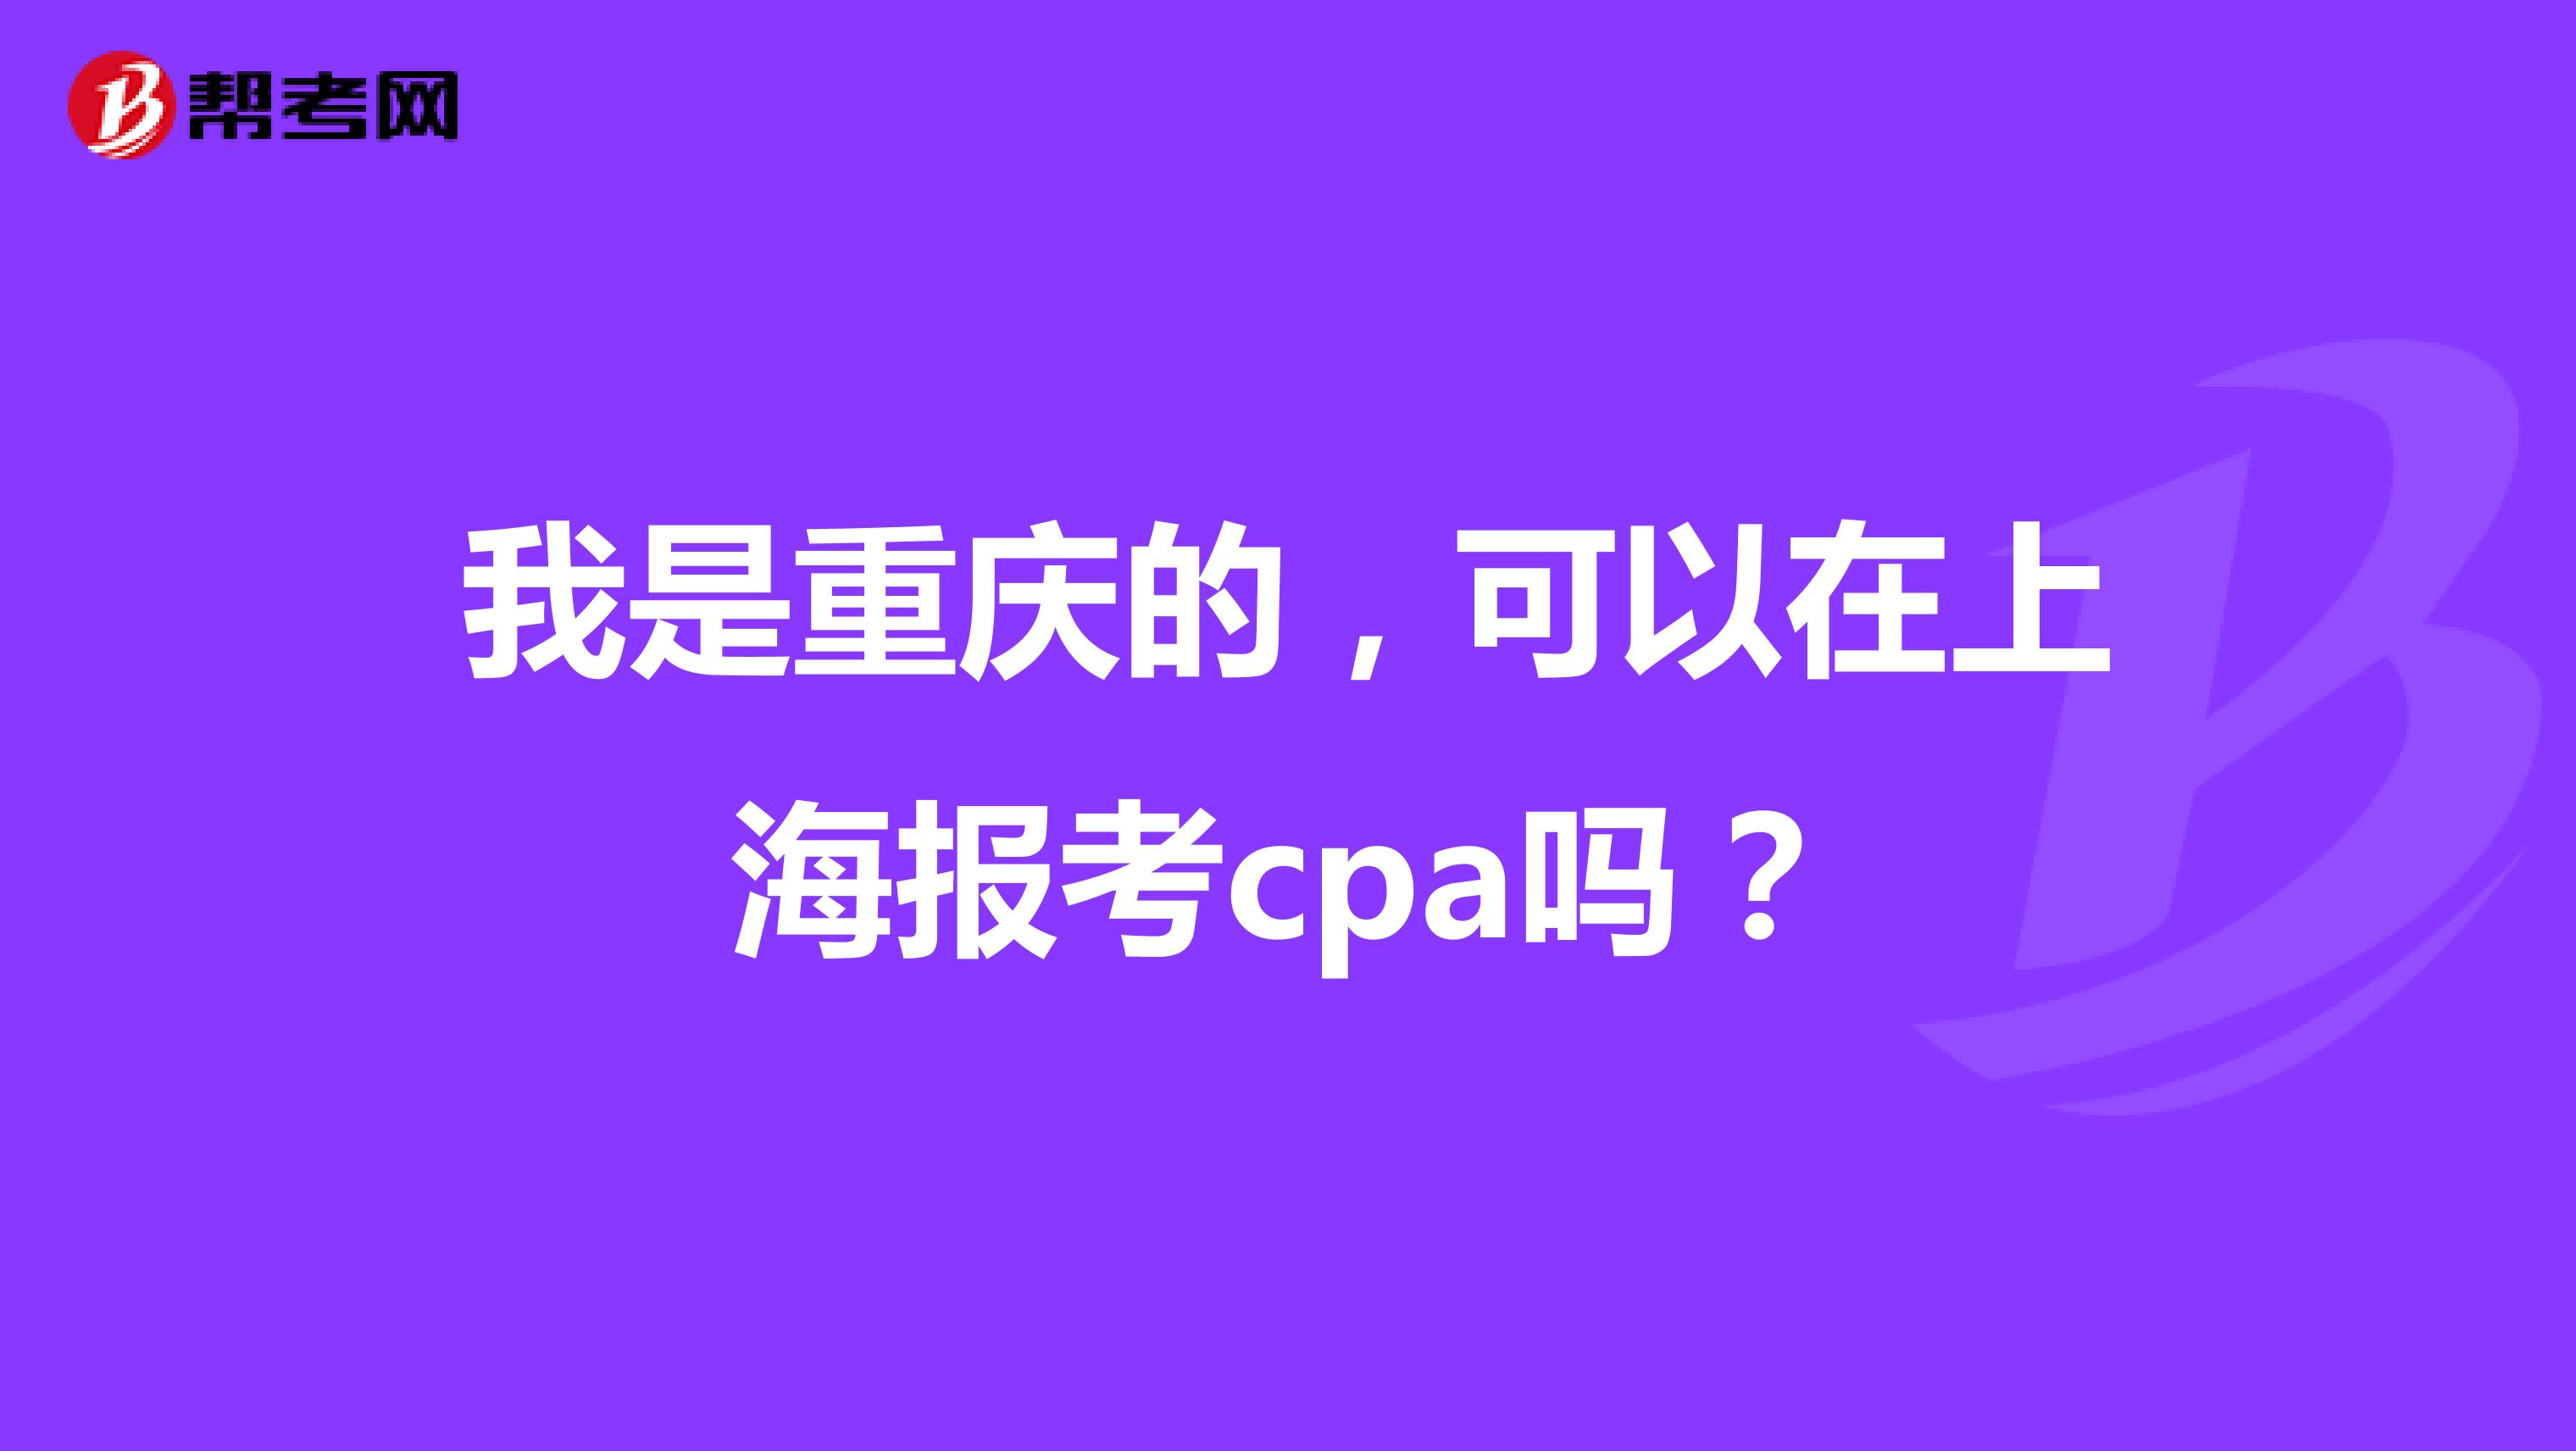 我是重庆的，可以在上海报考cpa吗？